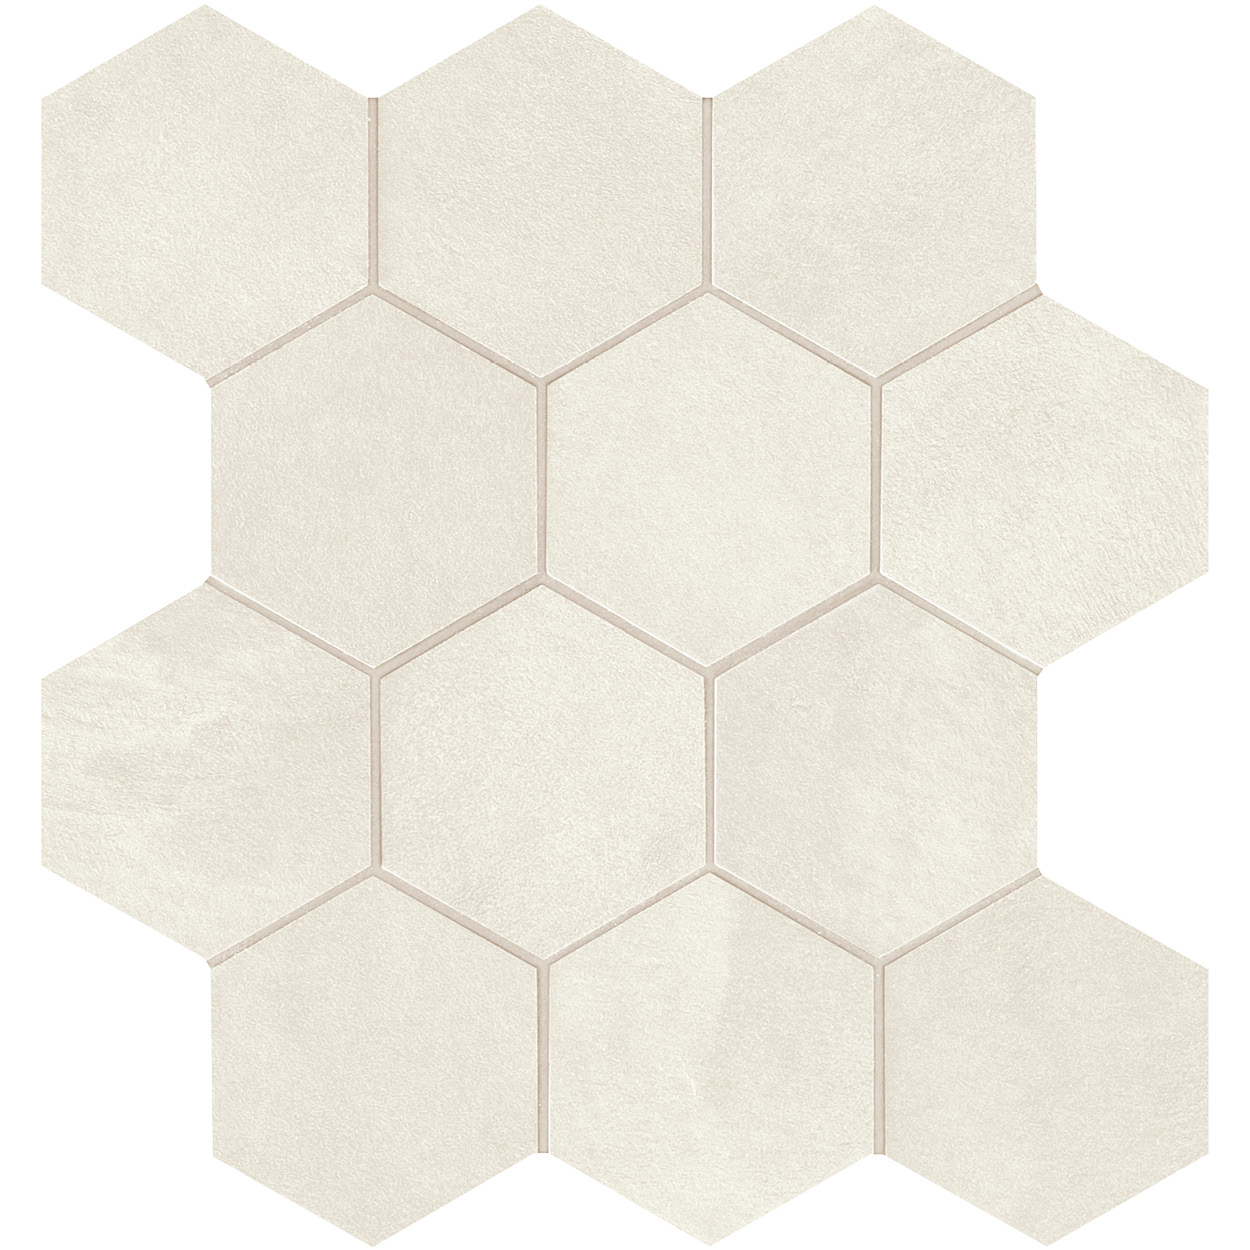 3 X 3 Seamless WR_01 hexagon